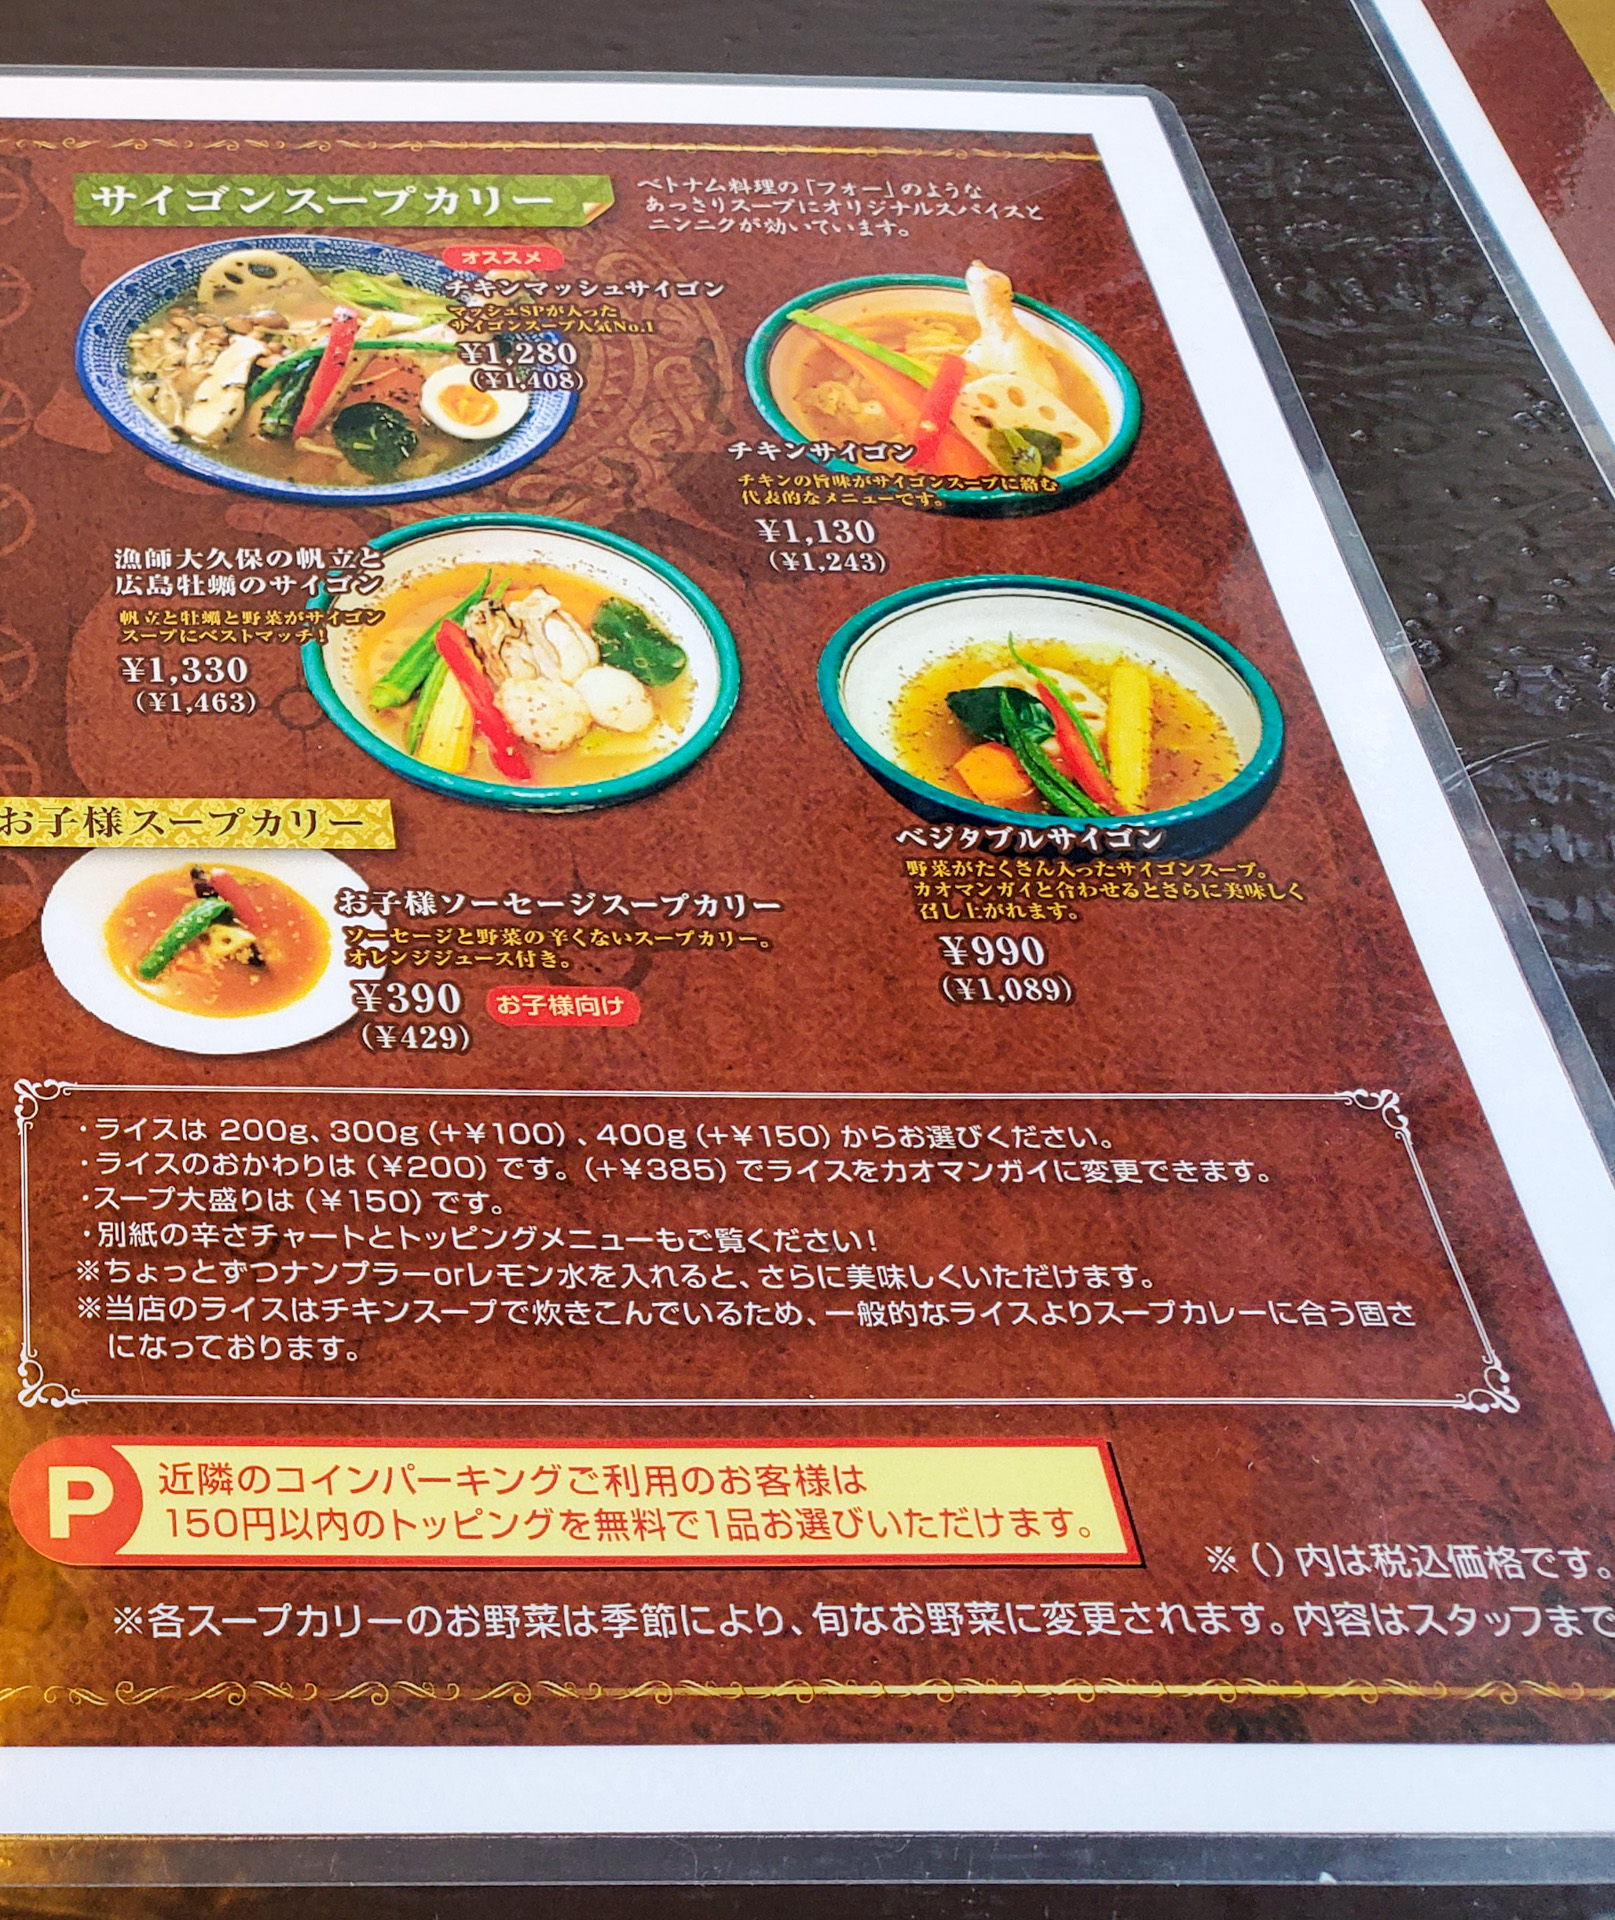 シャンティ 札幌総本店」札幌に復活してくれました！サイゴンスープが旨いアジアンチックなスープカレー店 |